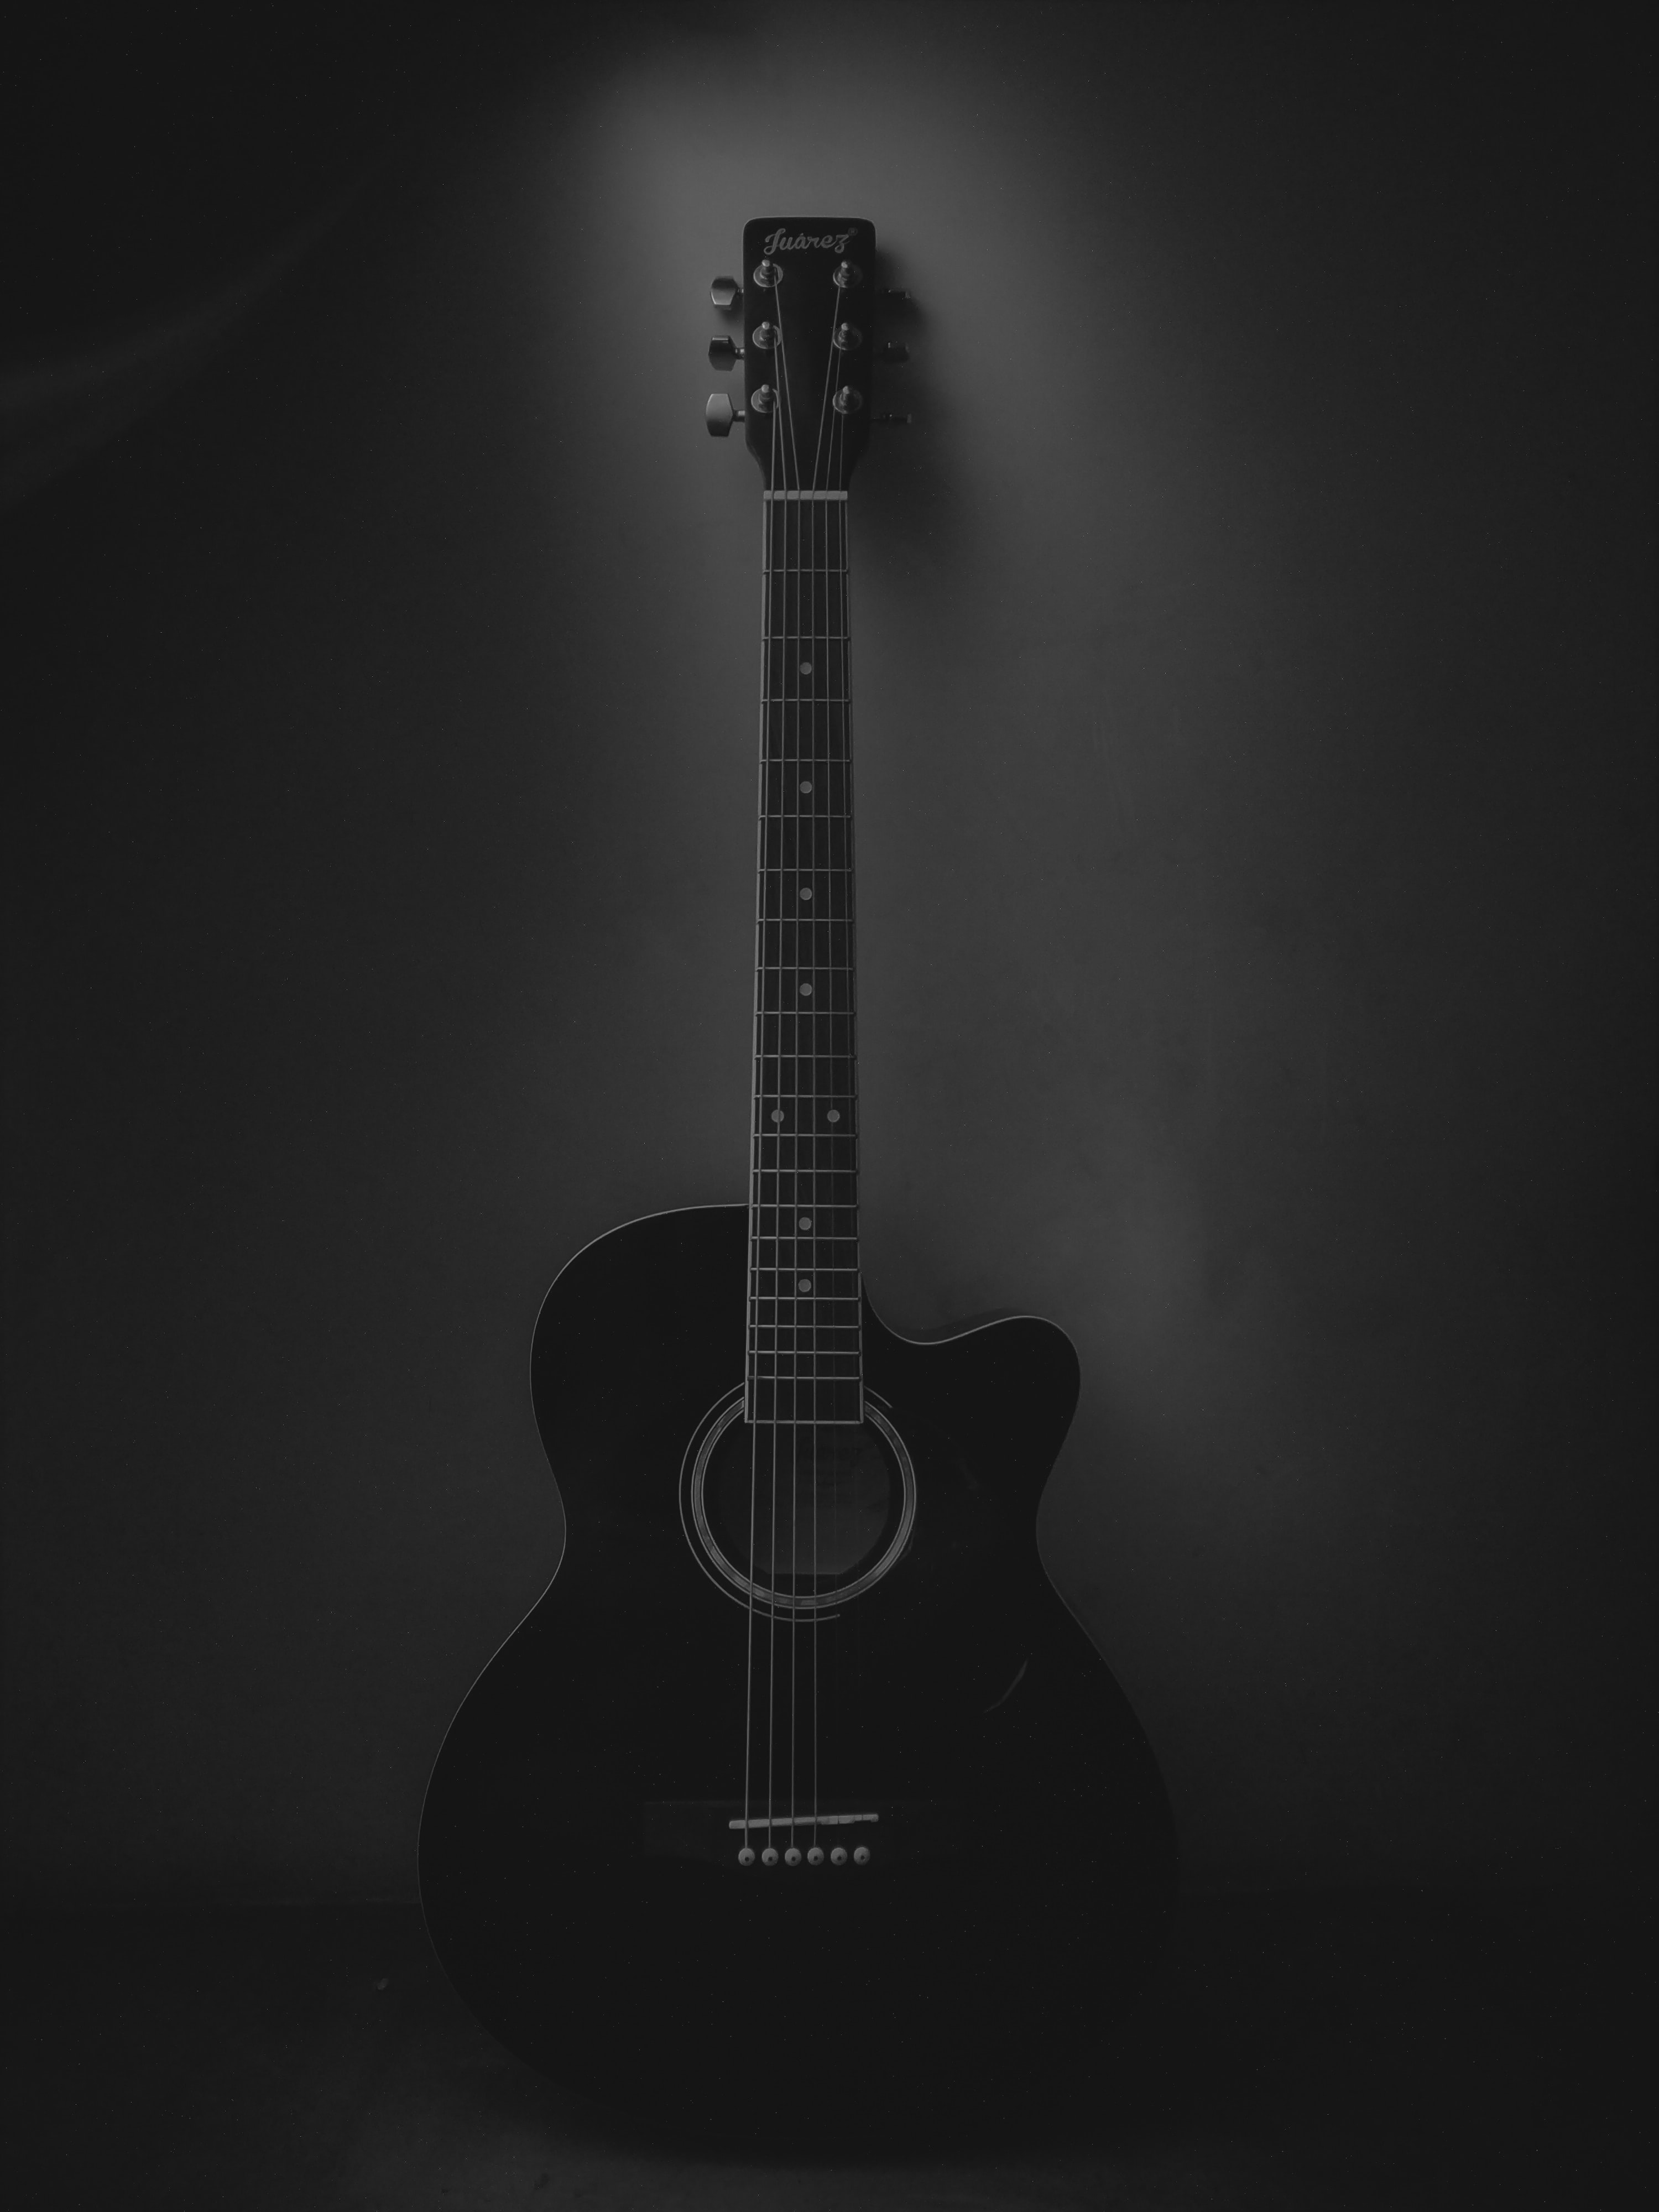 dark, black, guitar, music, acoustic guitar, musical instrument Full HD